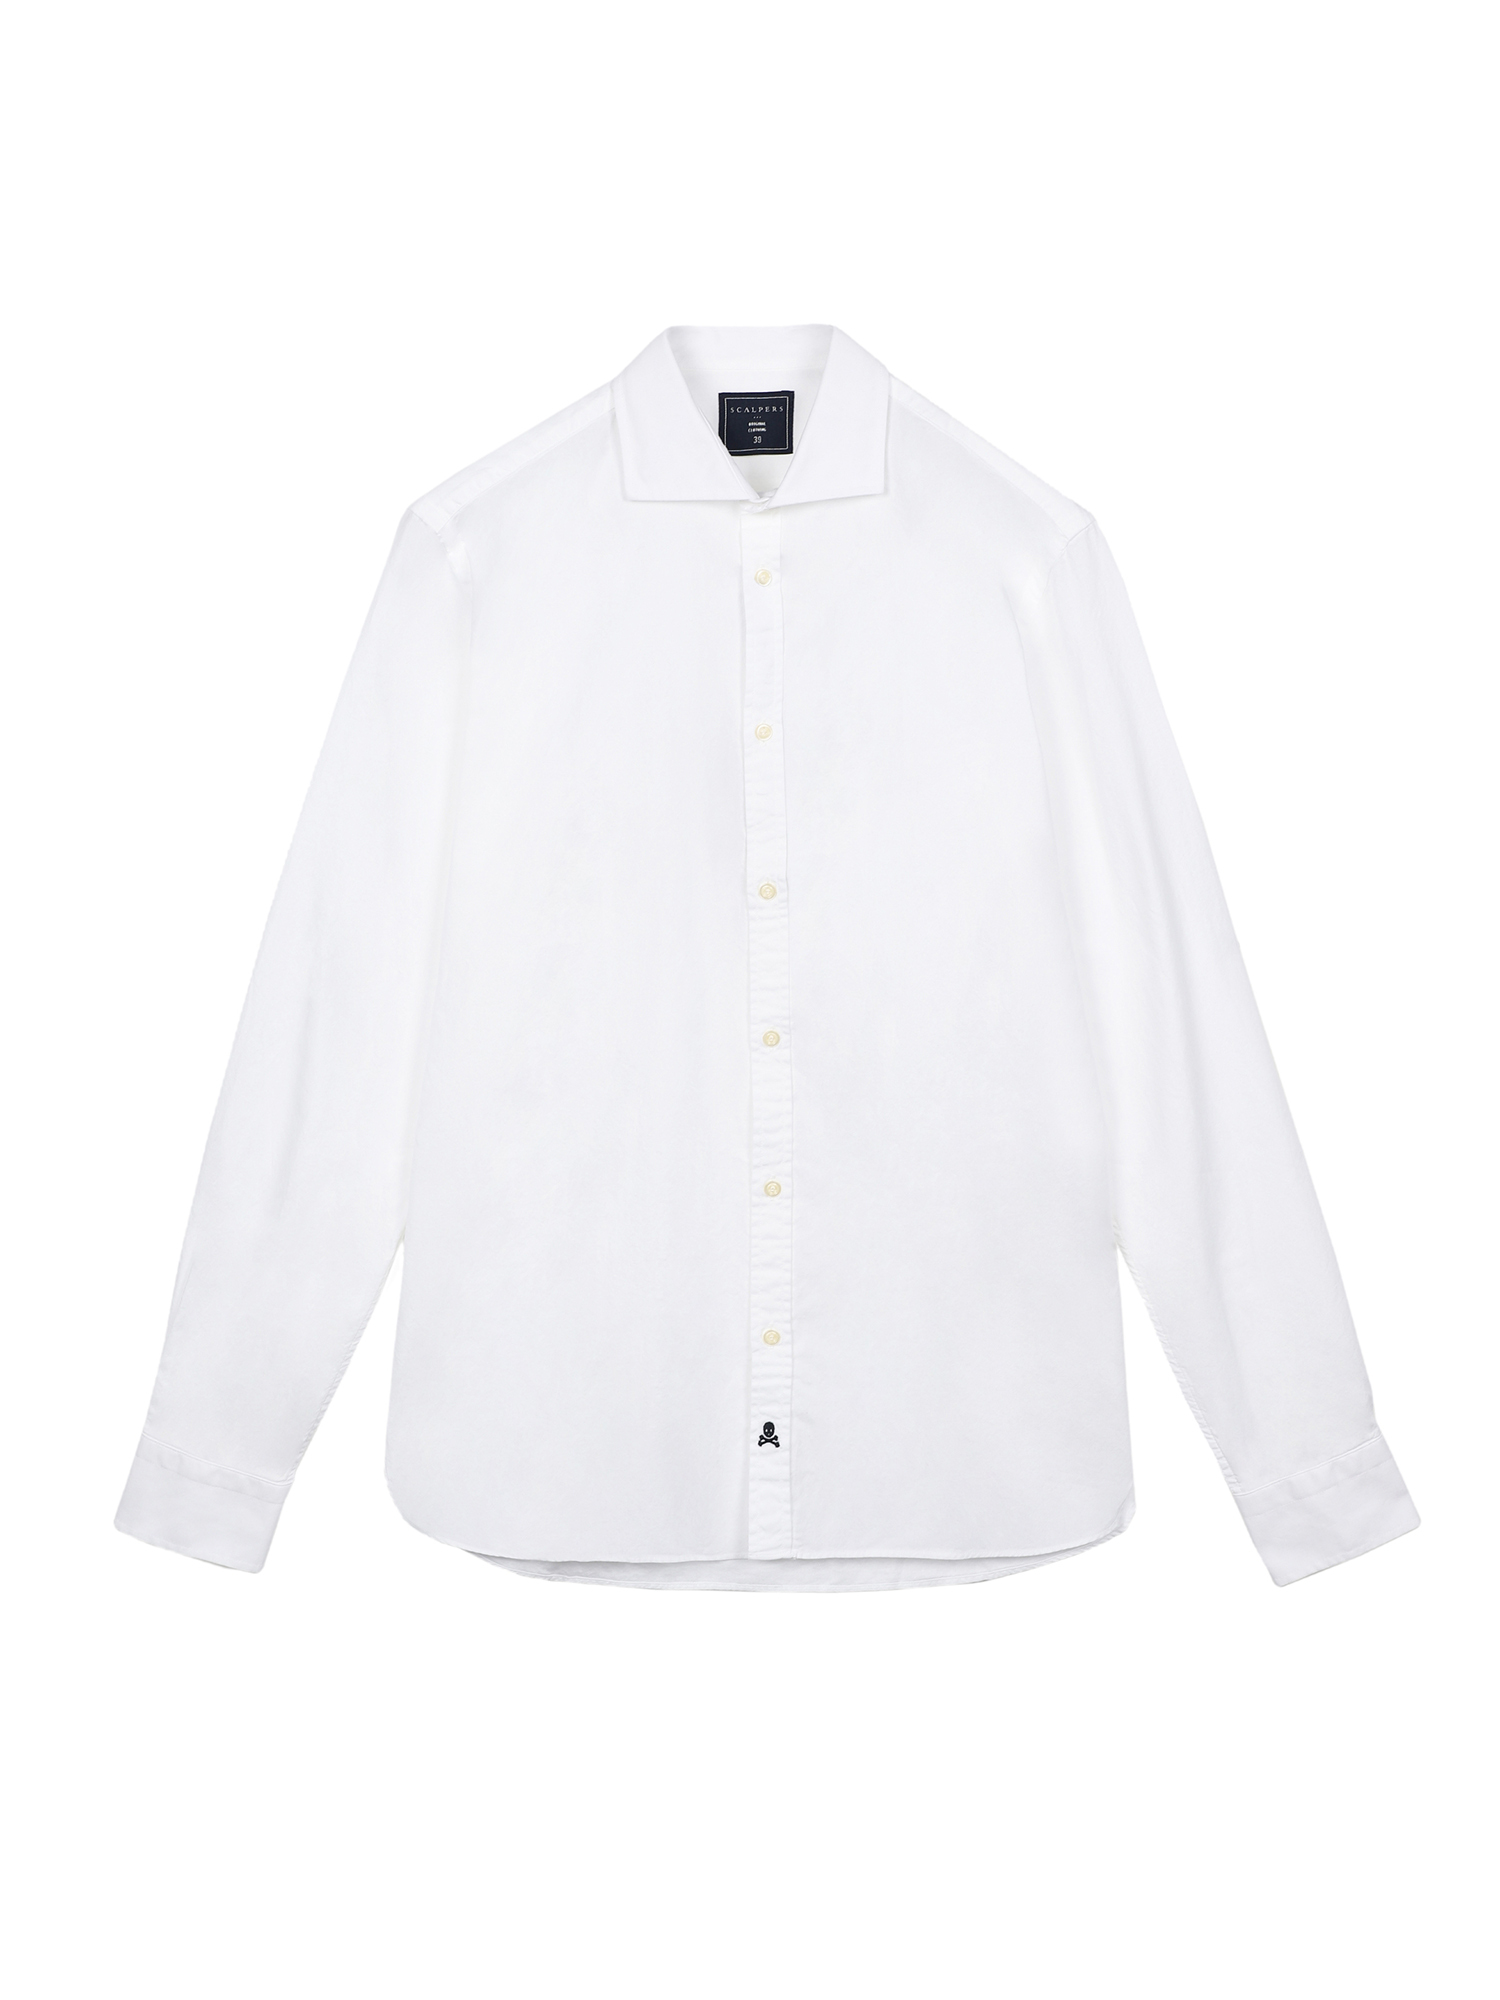 xIWej Odzież Scalpers Koszula w kolorze Biały, Naturalna Bielm 